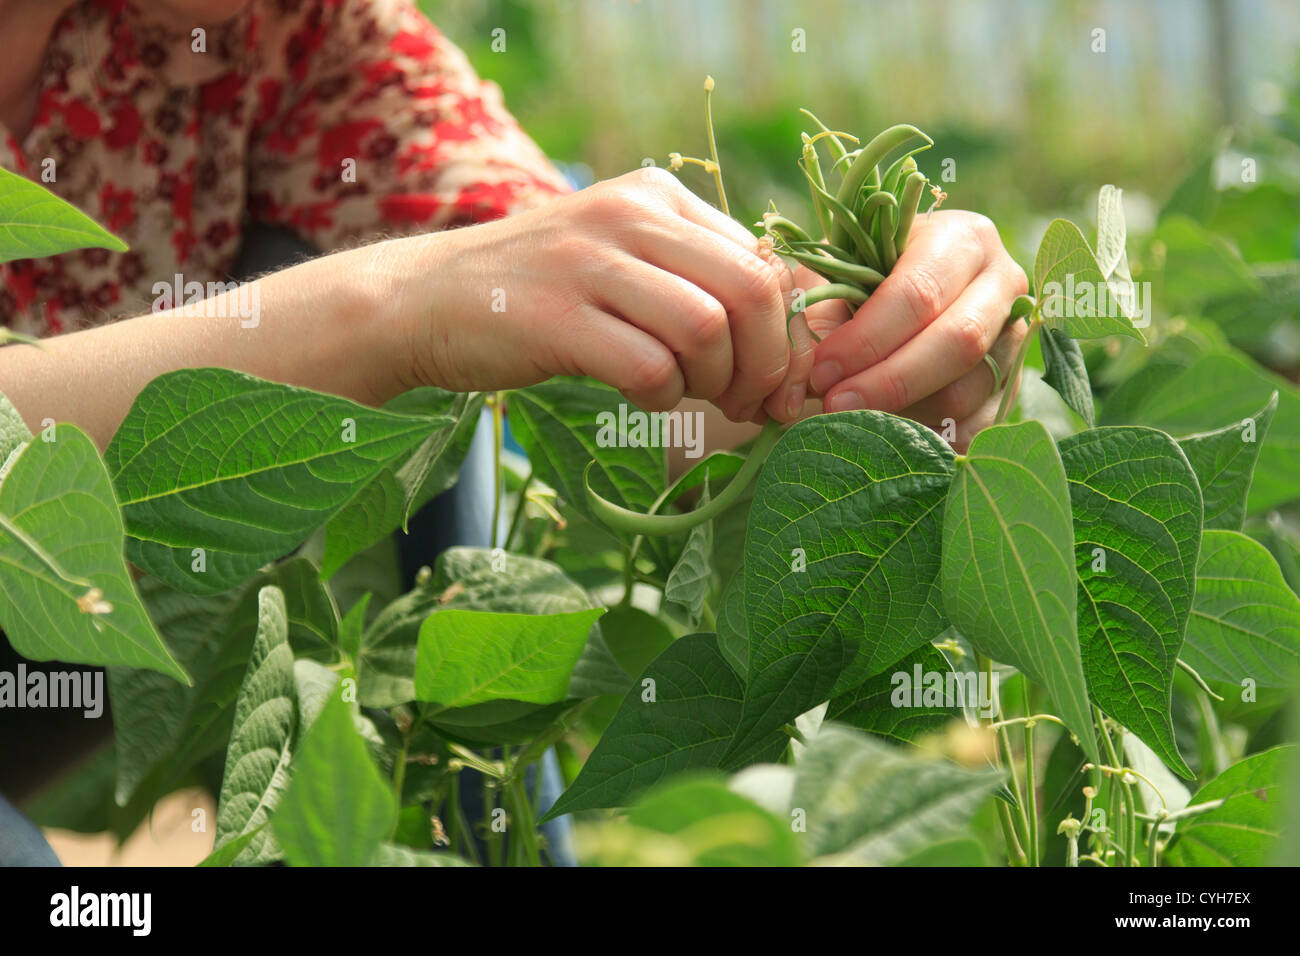 Piking di fagioli verdi 'Oxinel' sotto una serra // Cueillette de haricots verts nains 'Oxinel' Foto Stock